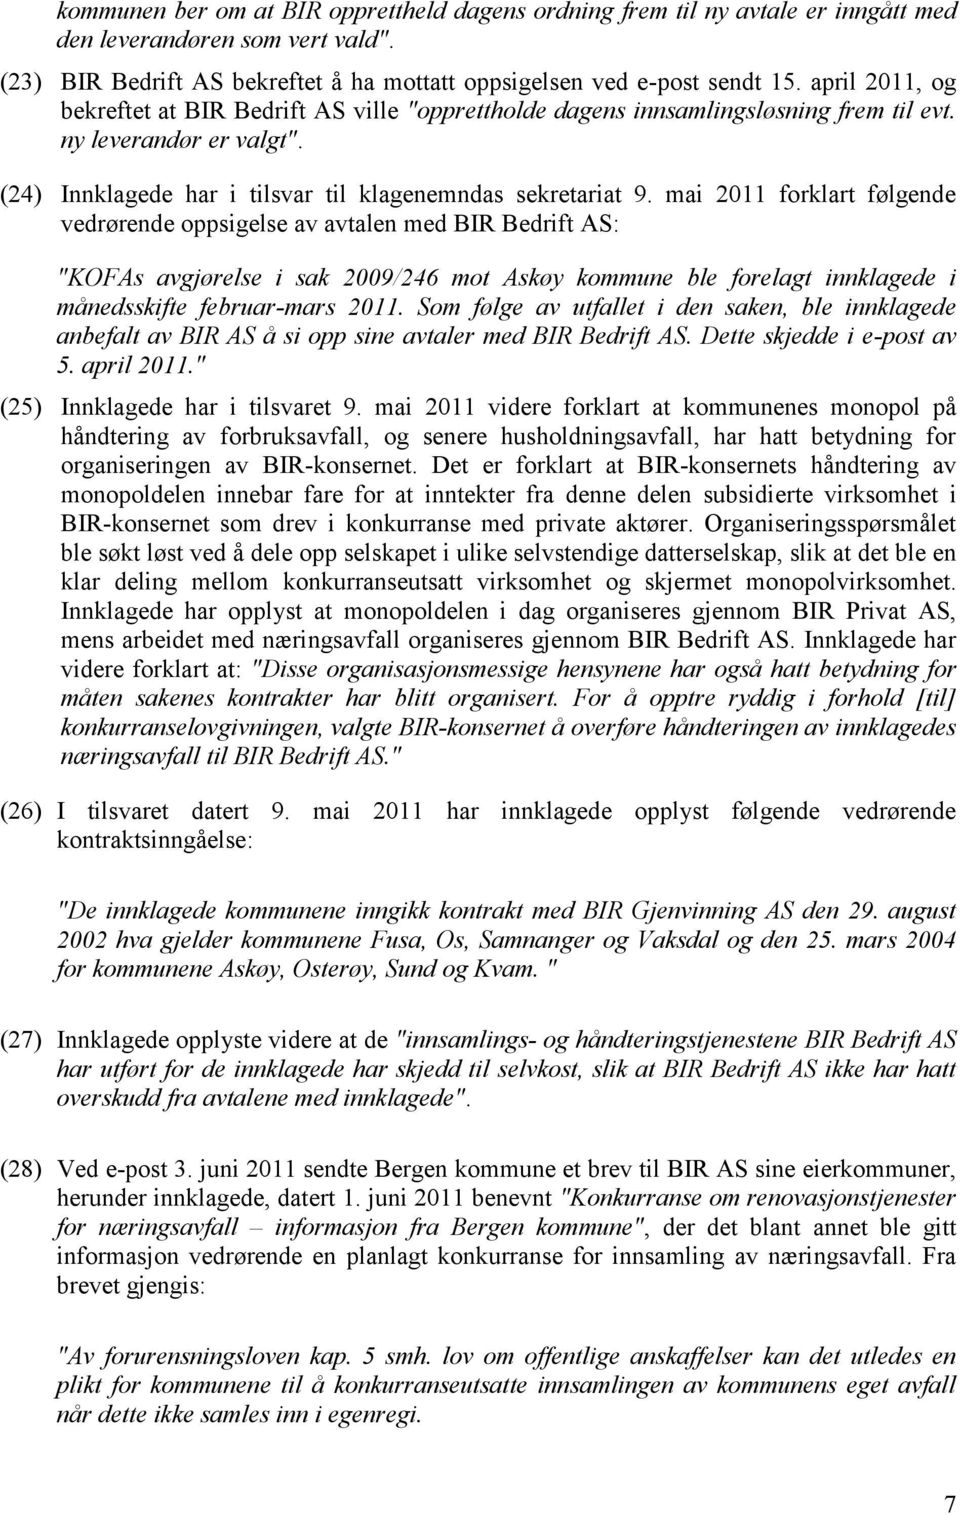 mai 2011 forklart følgende vedrørende oppsigelse av avtalen med BIR Bedrift AS: "KOFAs avgjørelse i sak 2009/246 mot Askøy kommune ble forelagt innklagede i månedsskifte februar-mars 2011.